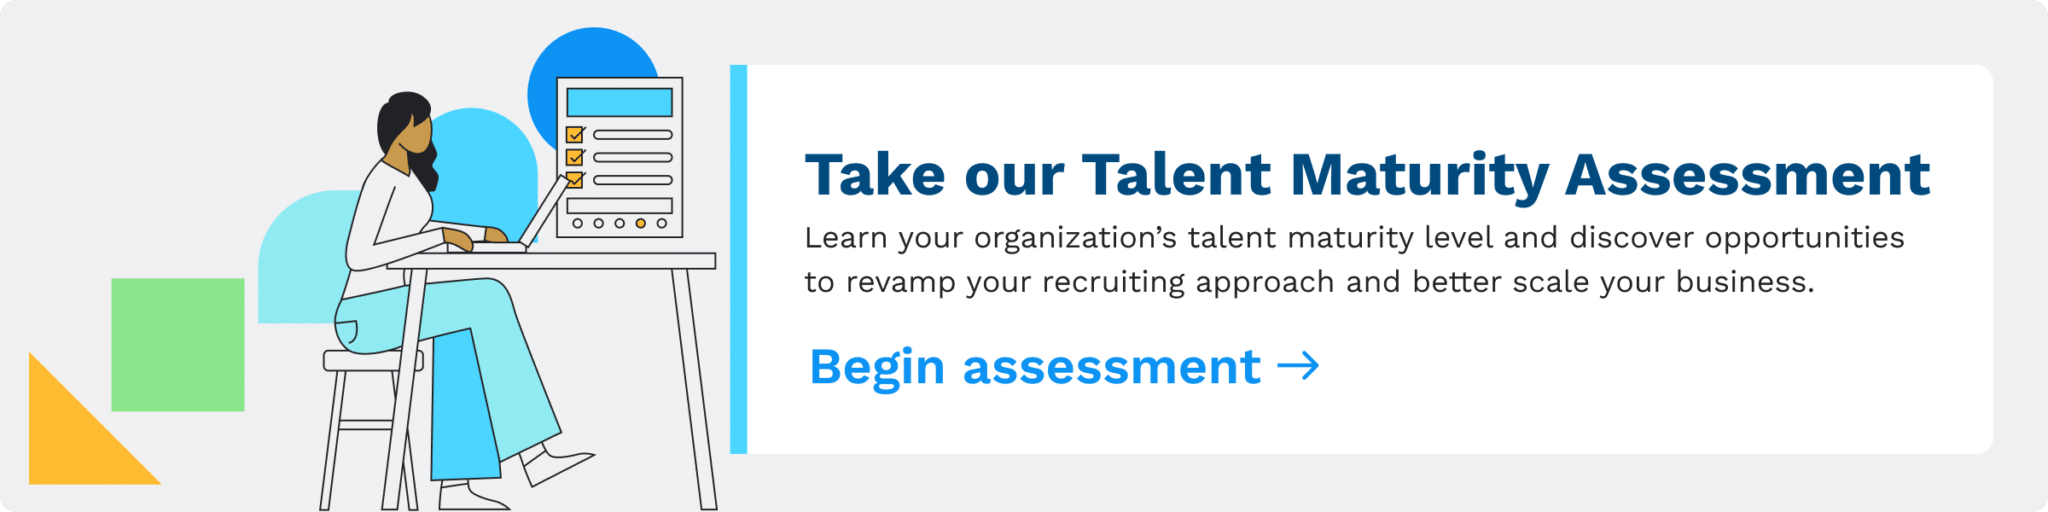 talent maturity assessment